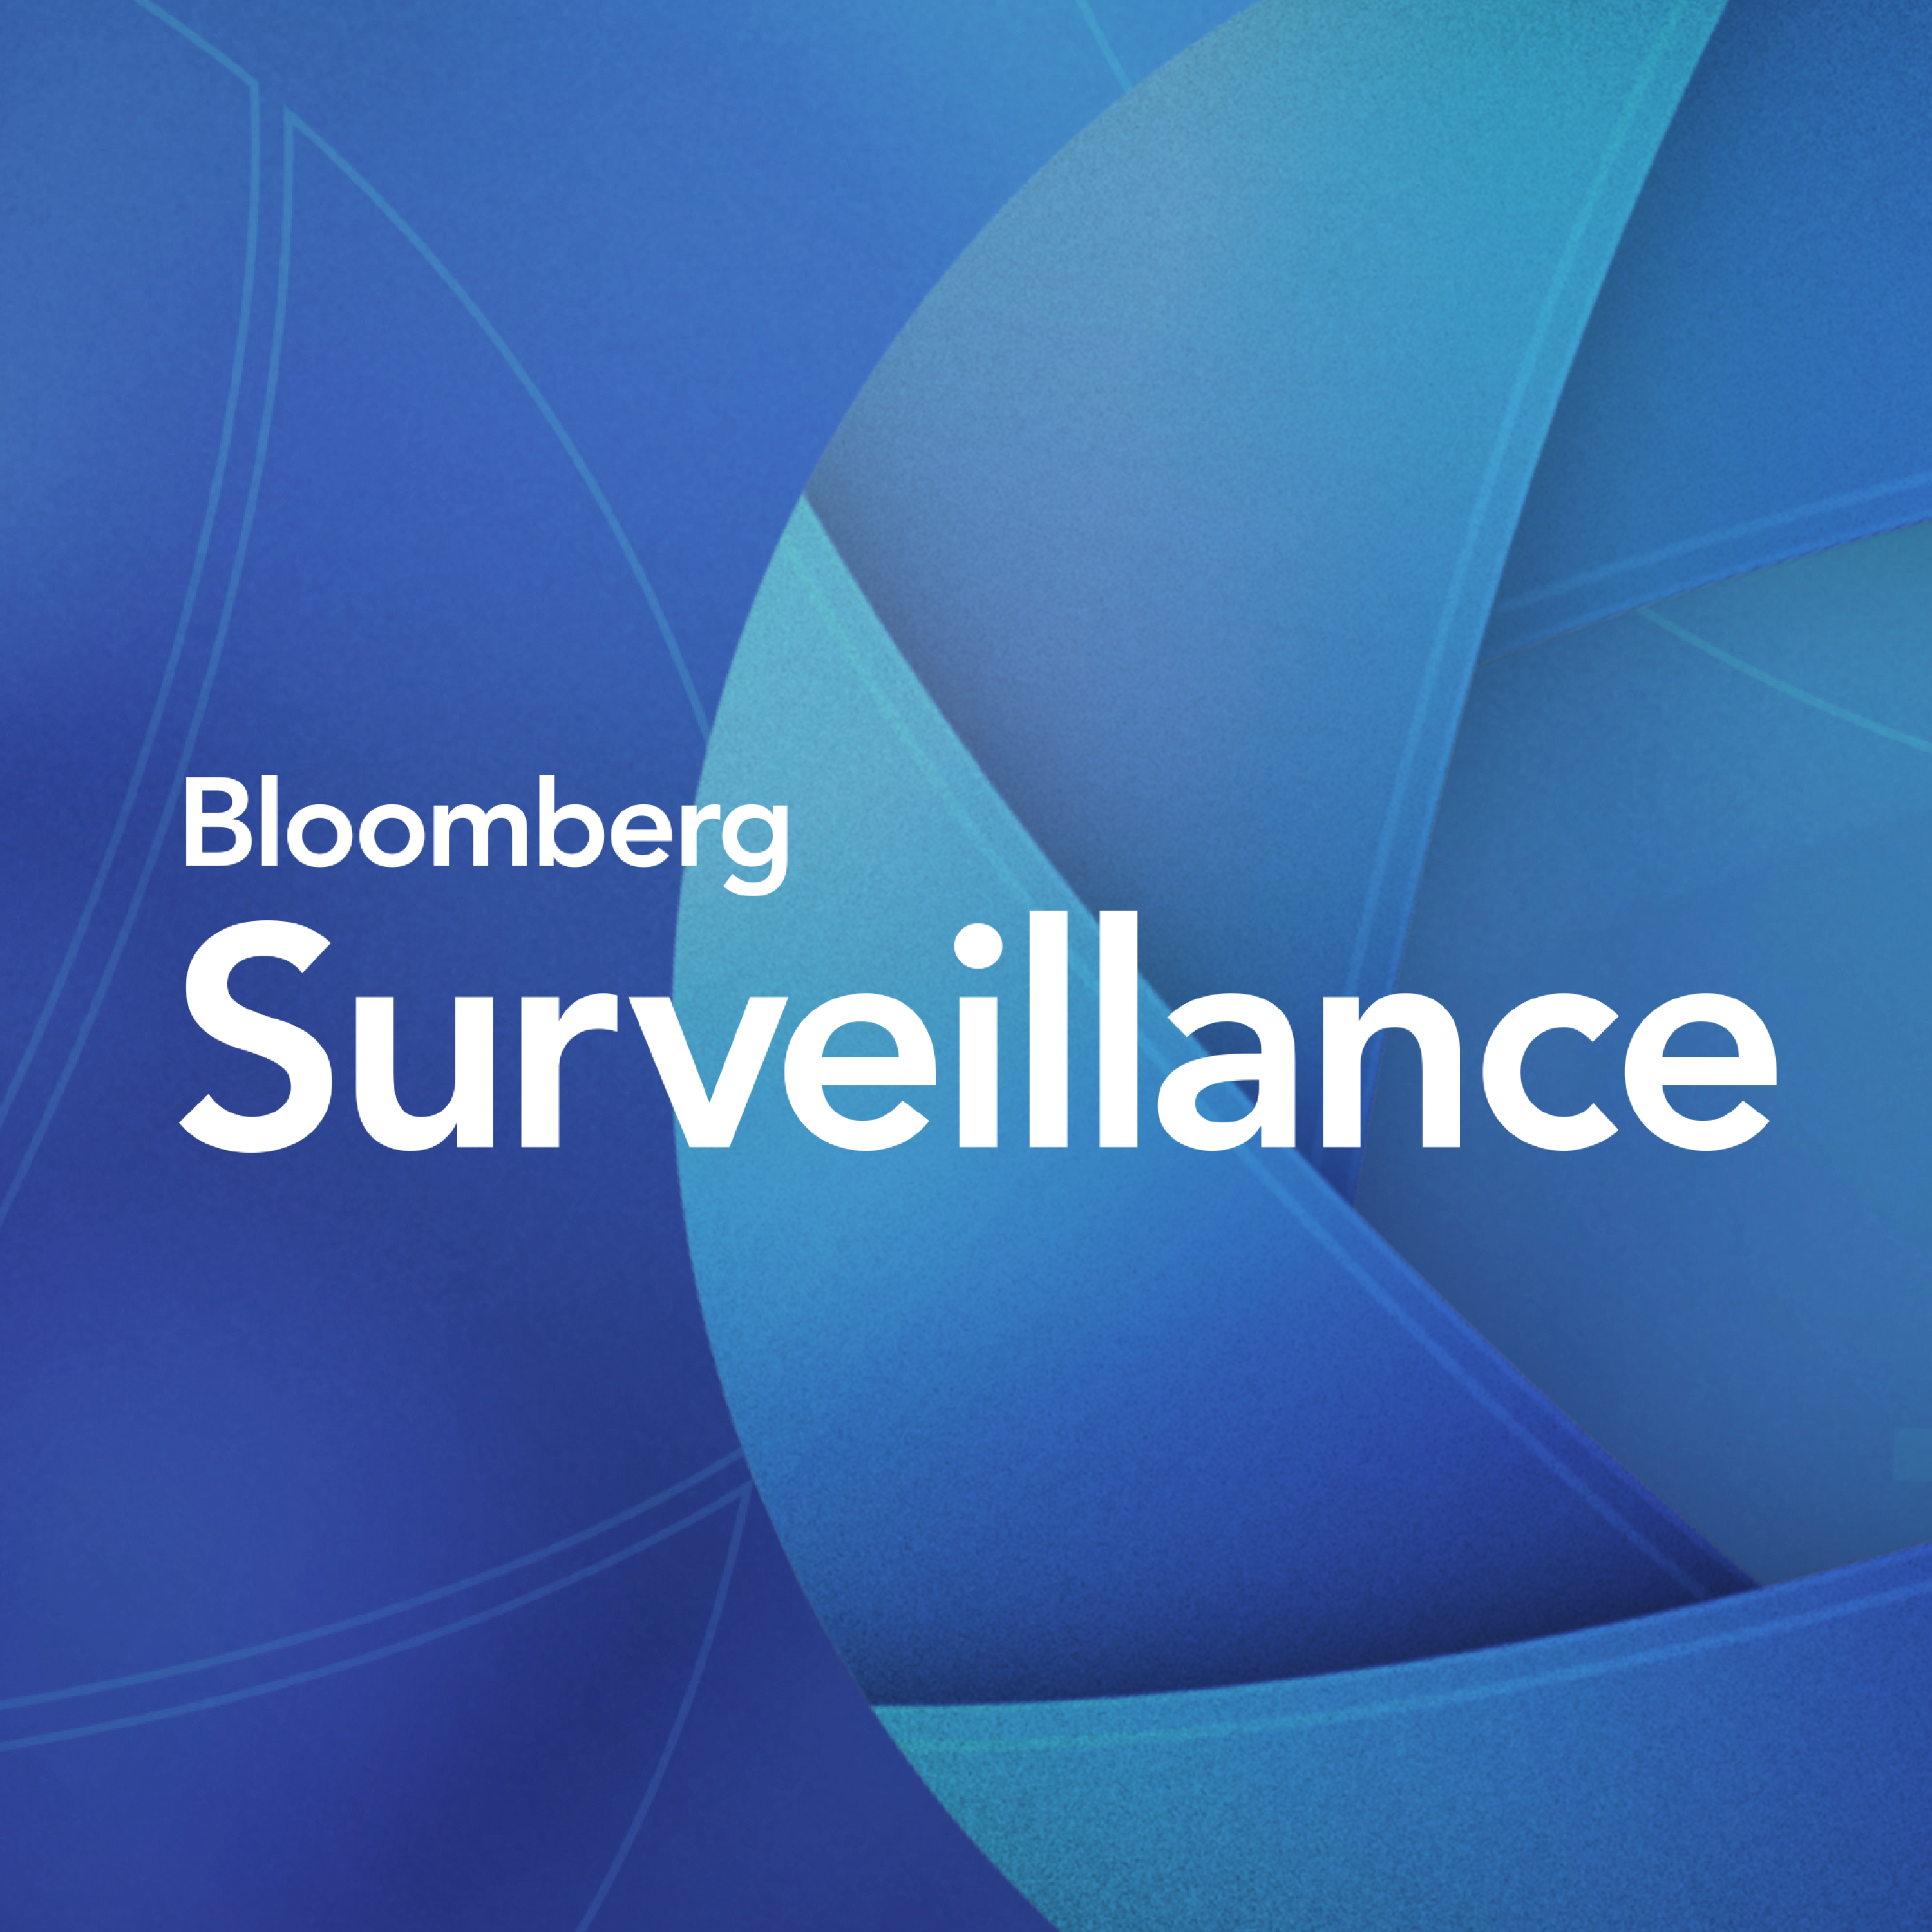 Surveillance: Market Divergence With Chandler